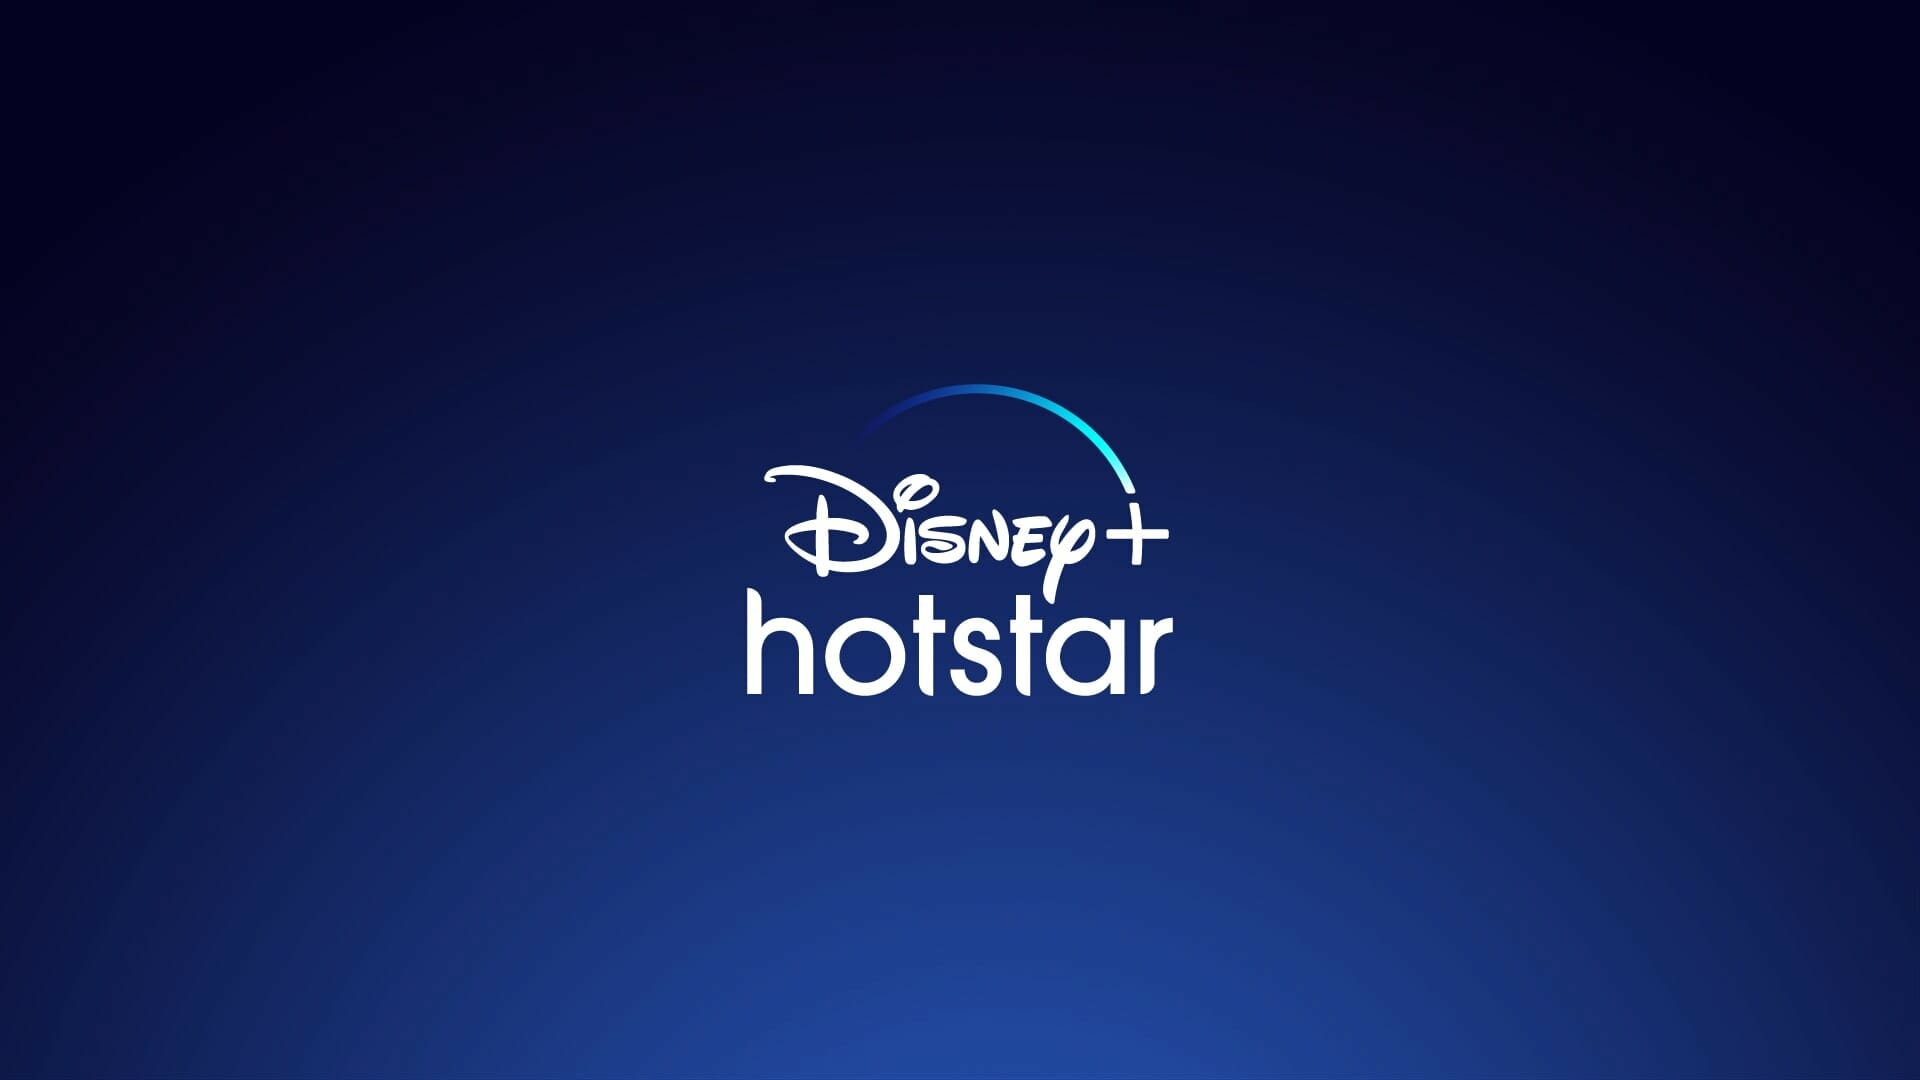 โลดแล่นสู่จินตนาการไม่รู้จบกับ “Disney+ Hotstar” ประเทศไทย เริ่มสตรีมทั่วประเทศ 30 มิถุนายนนี้ 1